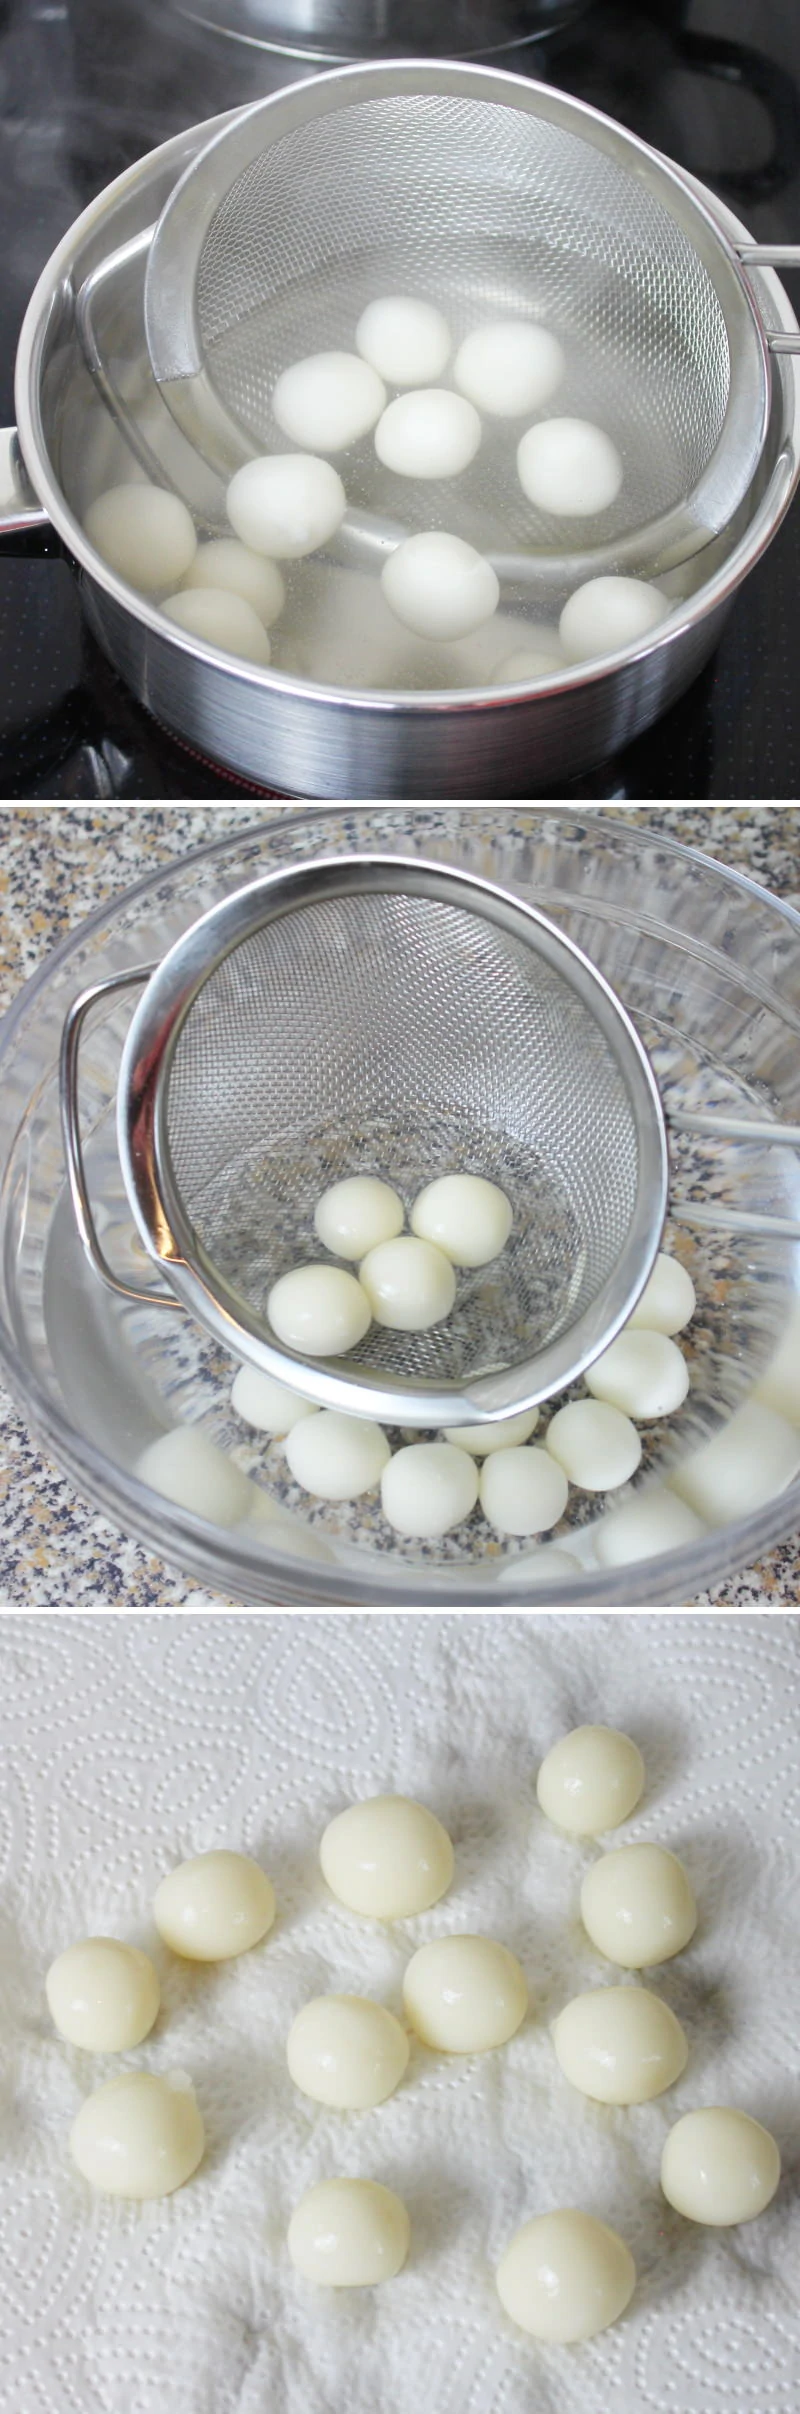 Shiratama Zenzai Schritt 9 Mini-Mochi Bällchen kochen